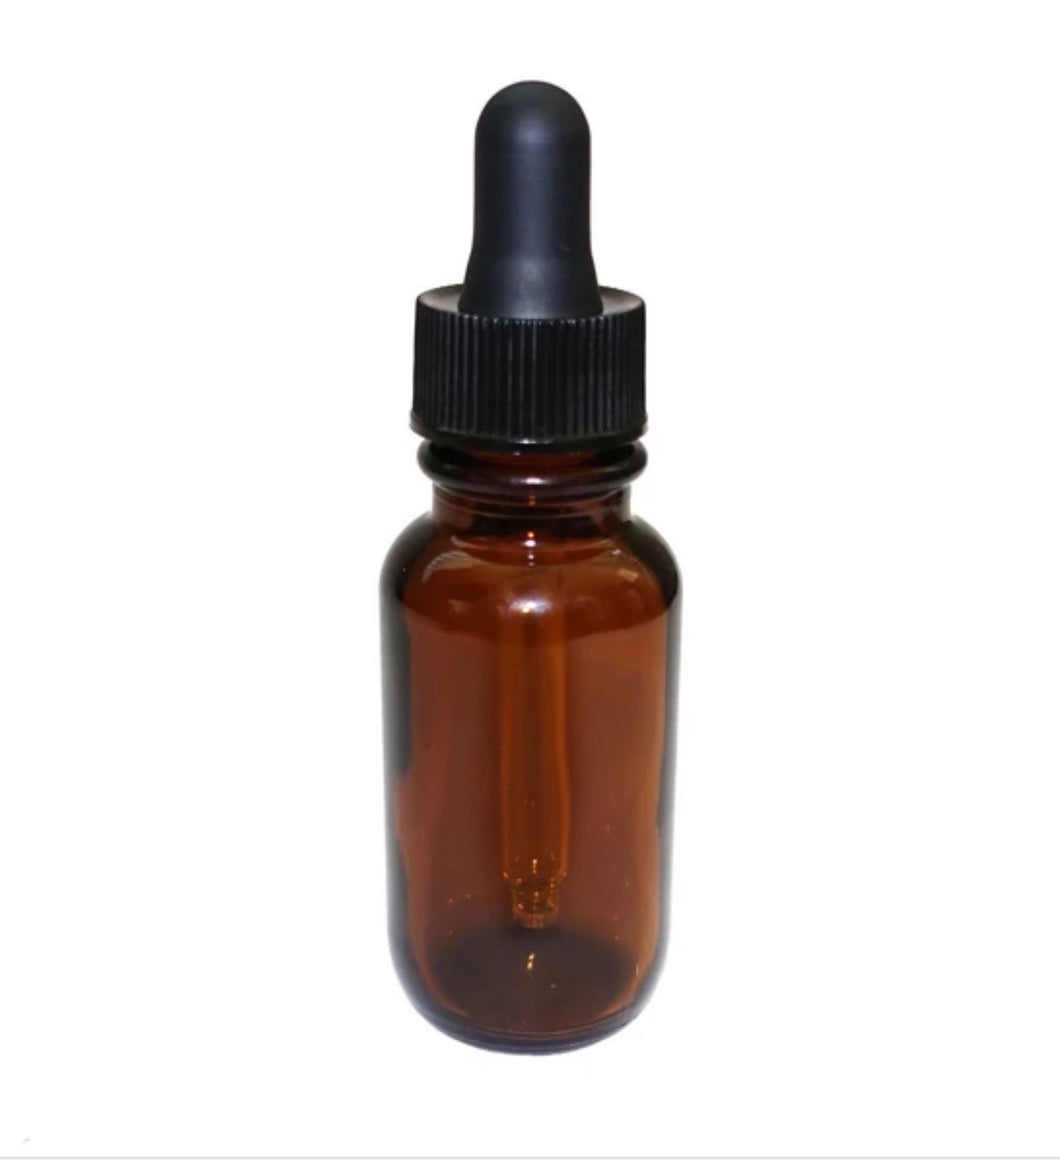 20ml fragrance oil in dropper